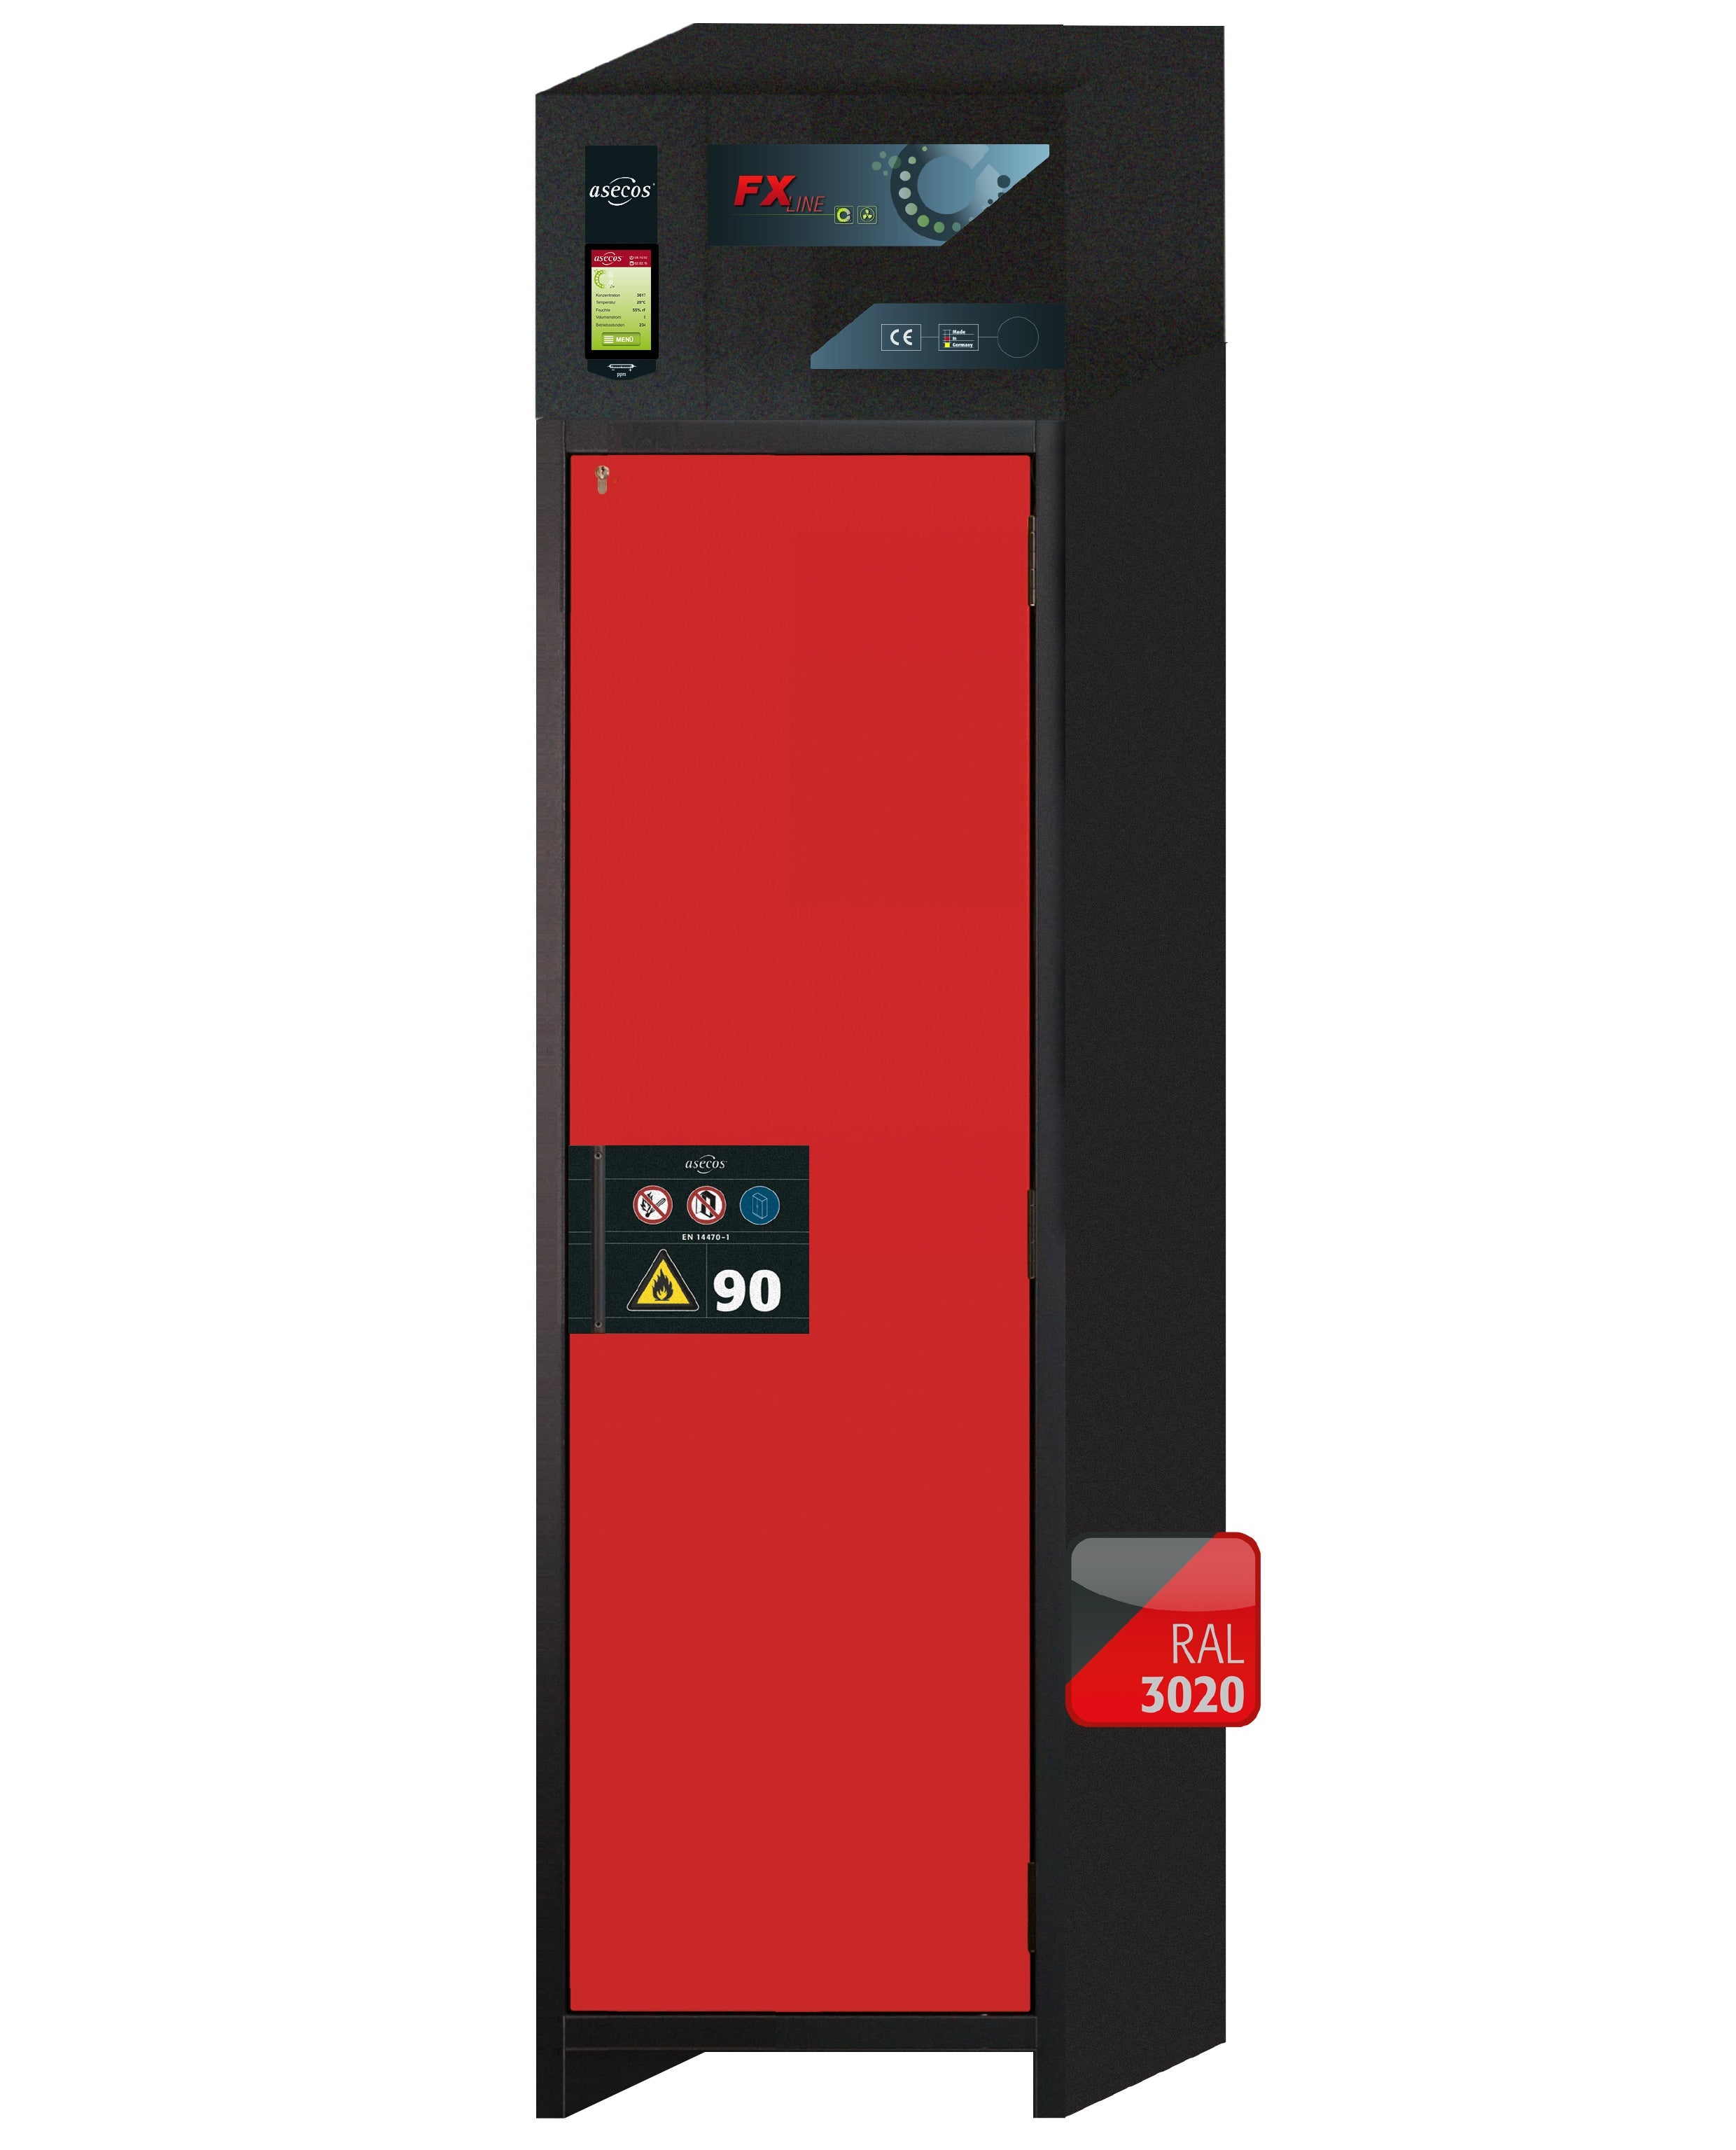 Armoire de filtration d'air recyclé type 90 FX-PEGASUS-90 modèle FX90.229.060.WDACR en rouge signalisation RAL 3020 avec 3 plateaux coulissants standard (tôle d'acier)